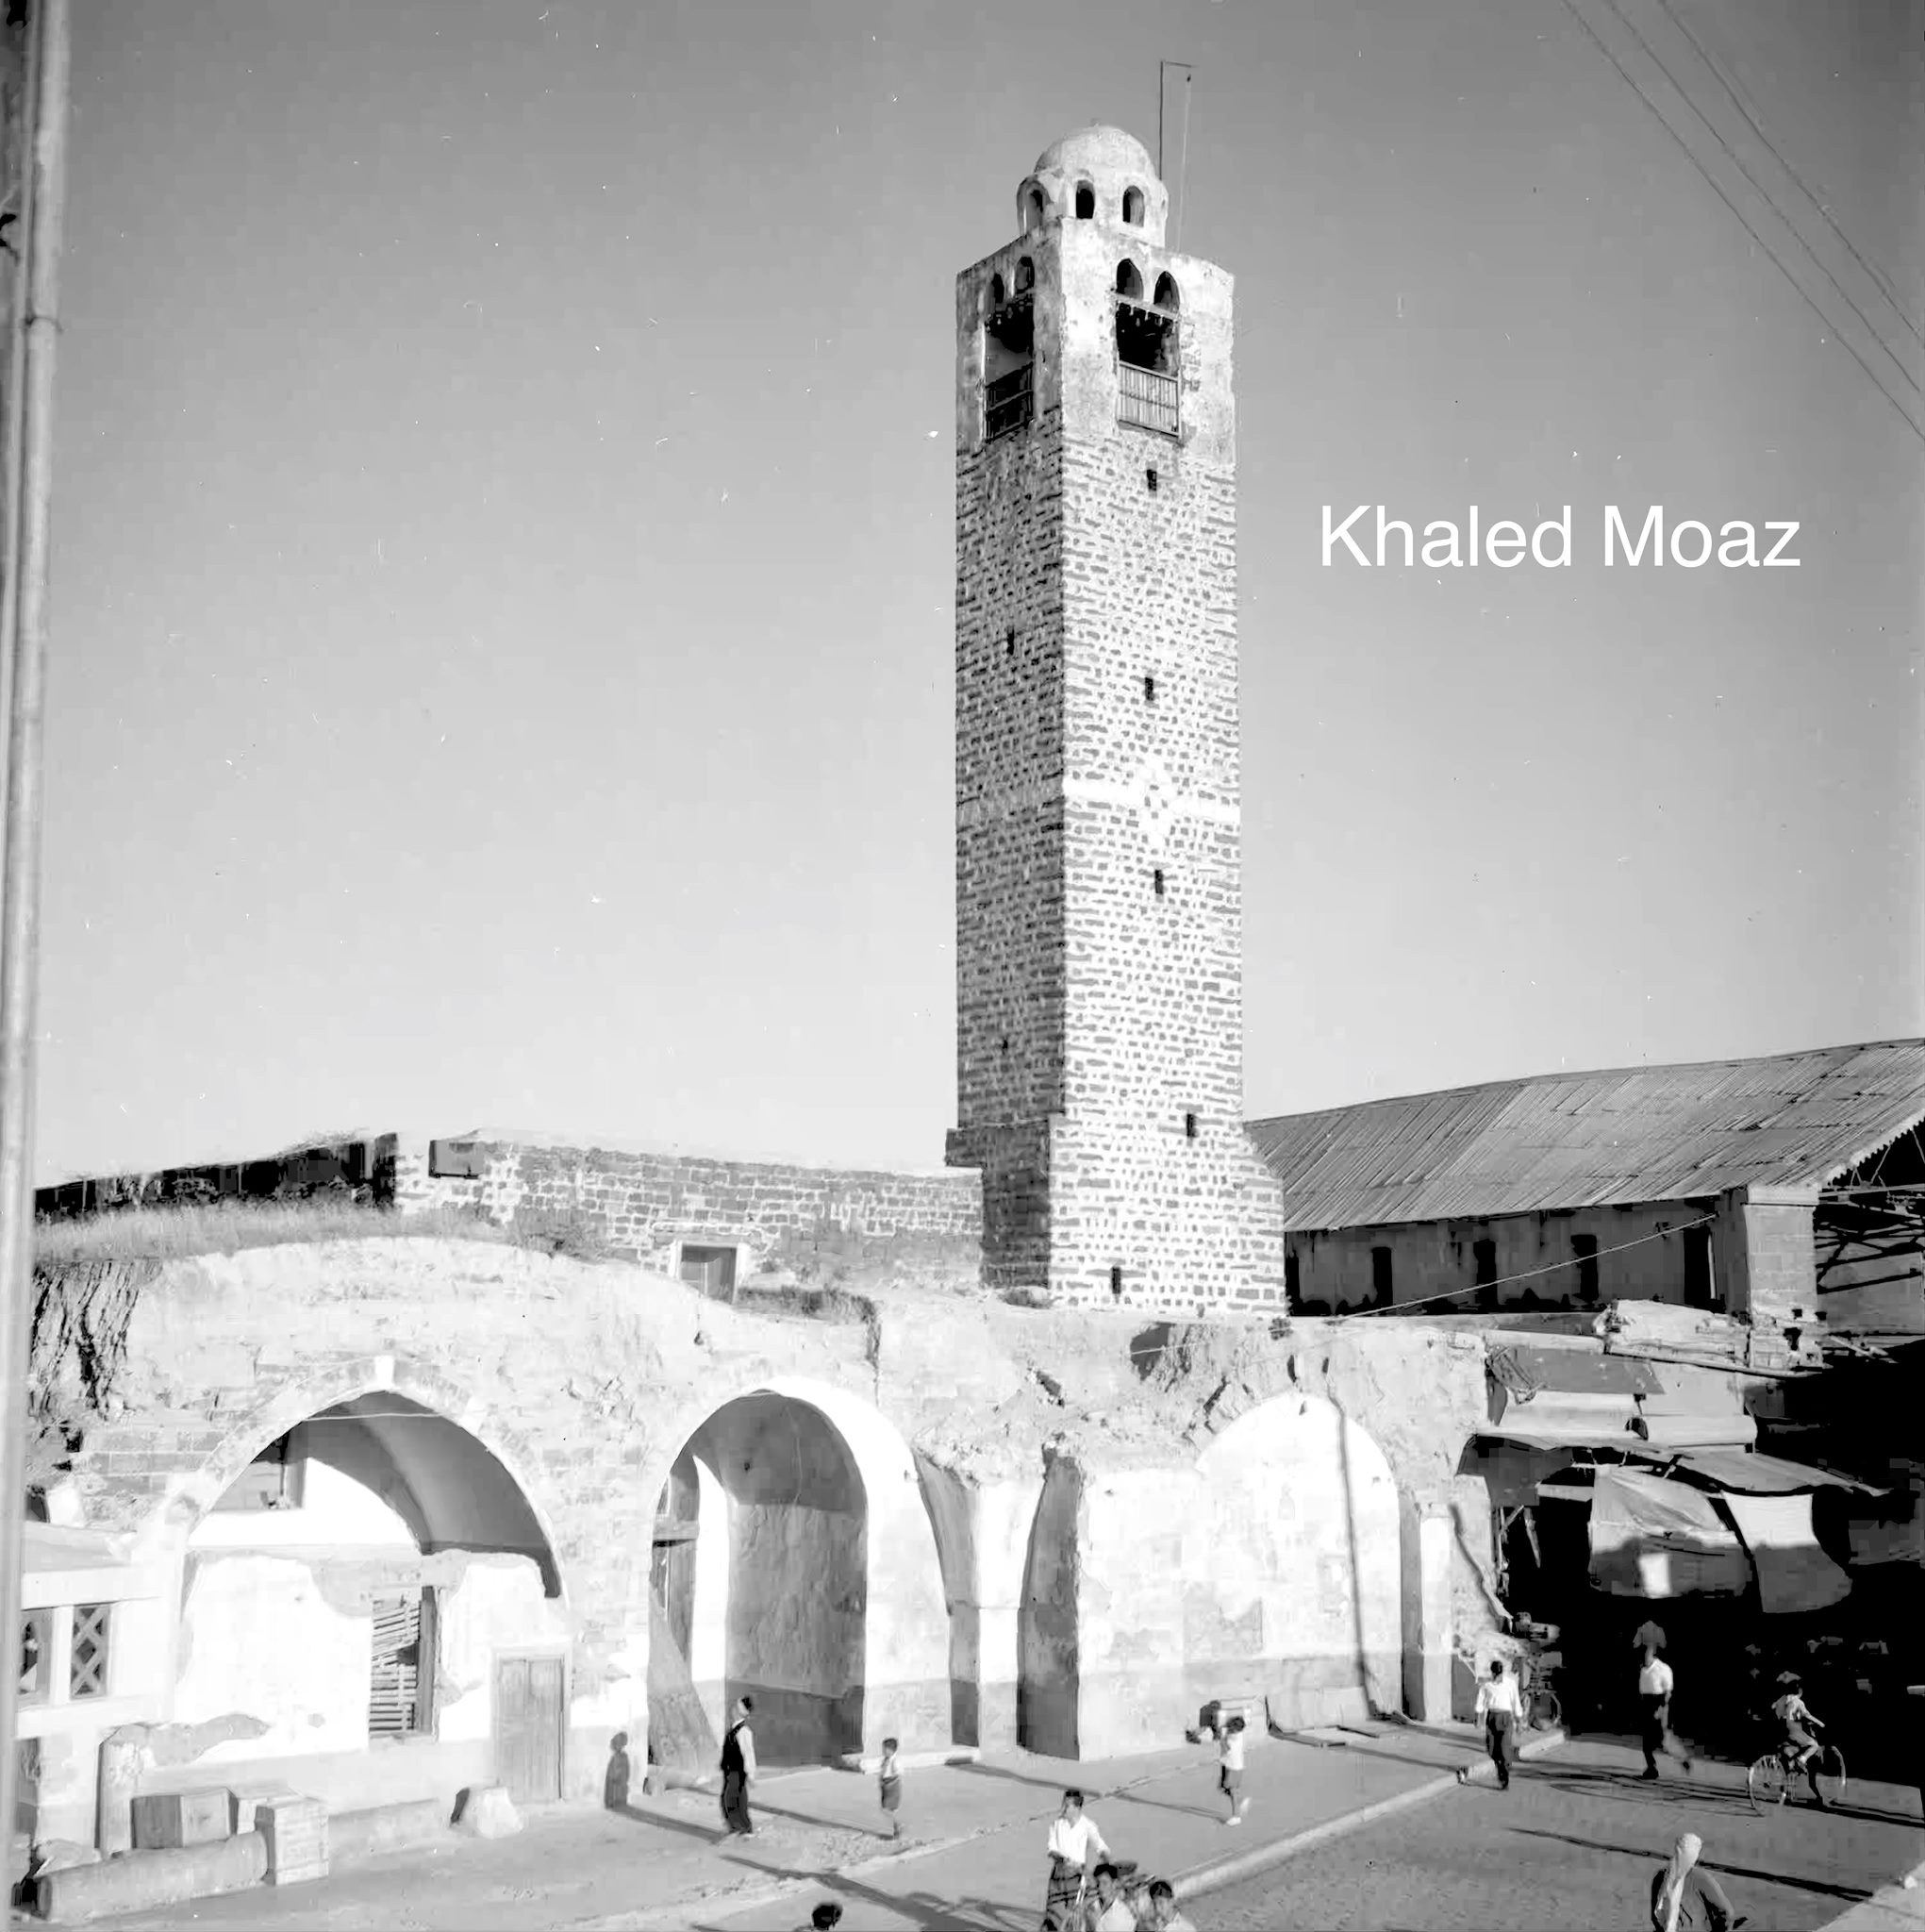 التاريخ السوري المعاصر - المسجد النوري الكبير في حمص في خمسينات القرن العشرين